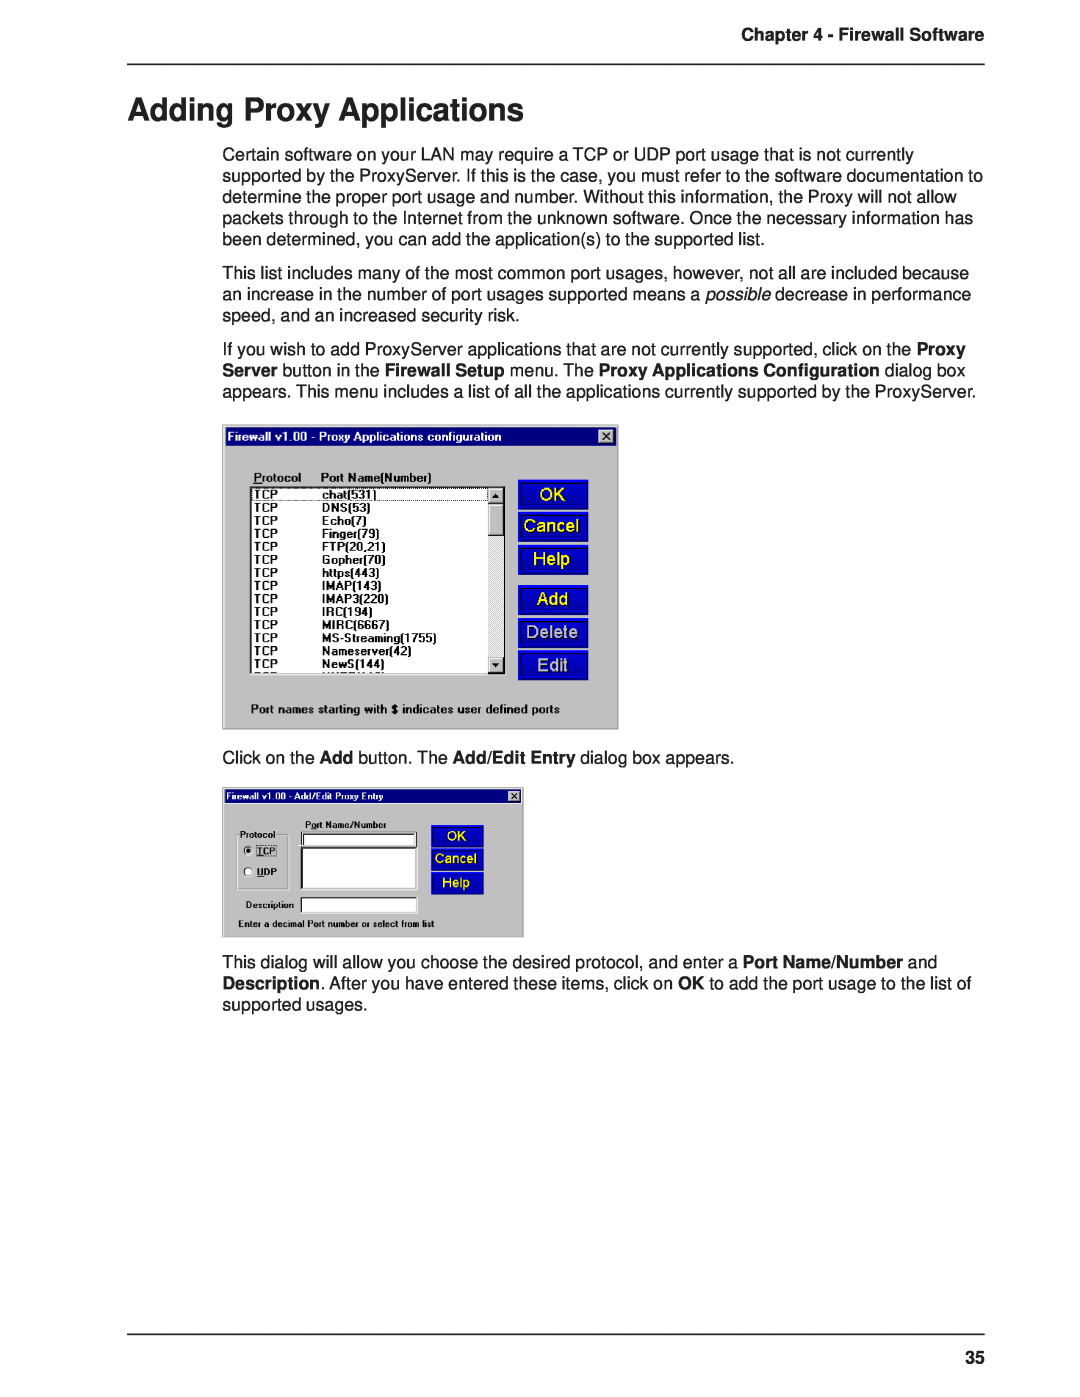 Multitech MTPSR1-120 manual Adding Proxy Applications, Firewall Software 